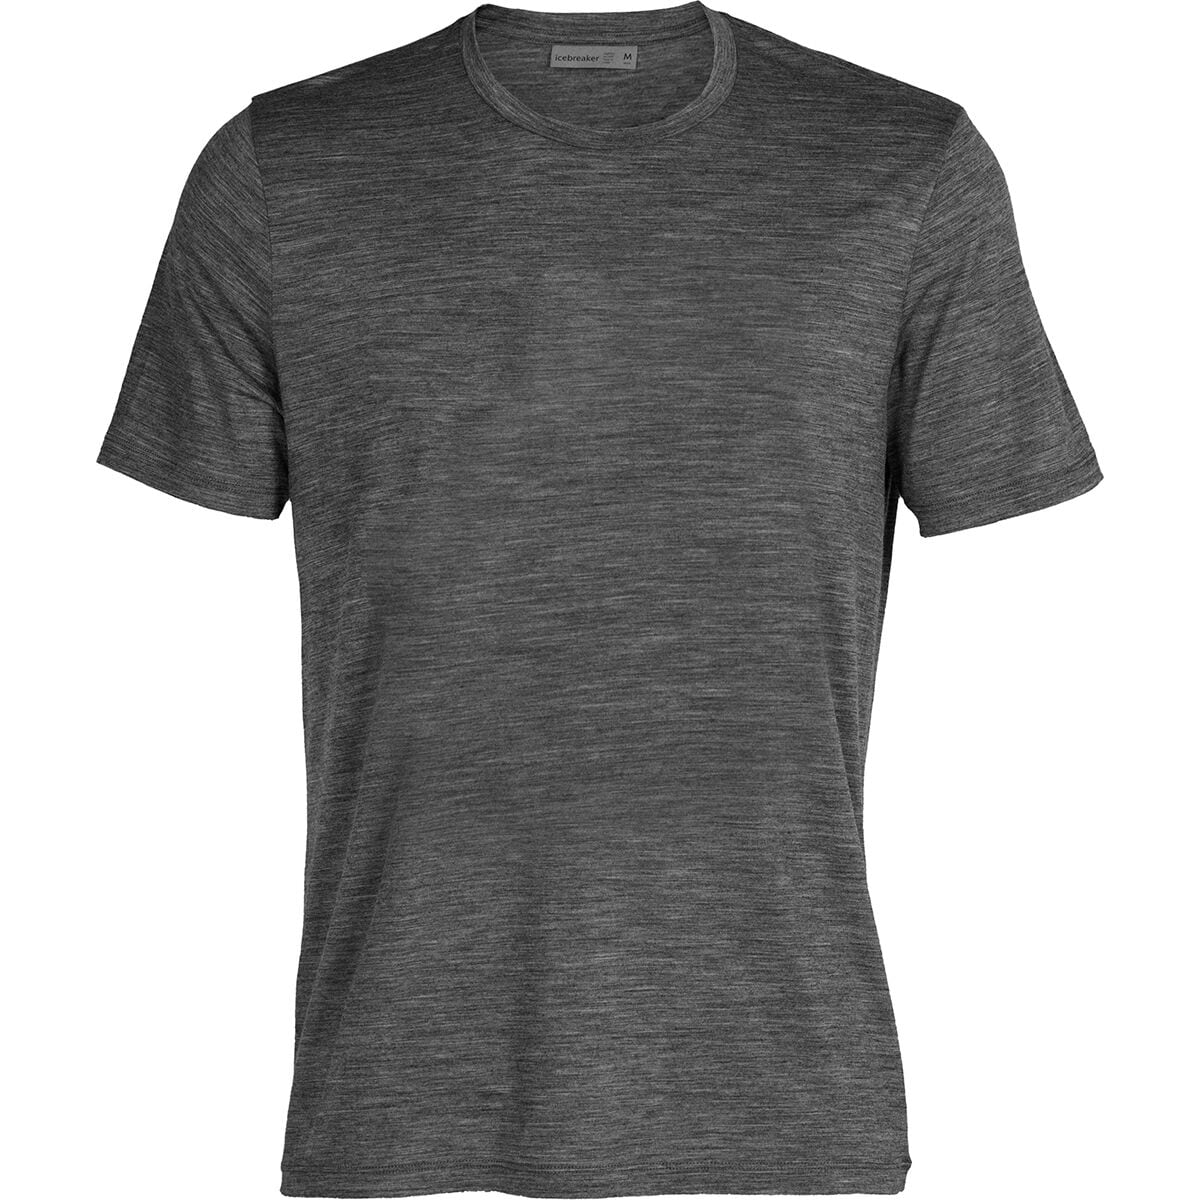 Tech Lite II Short-Sleeve T-Shirt - Men